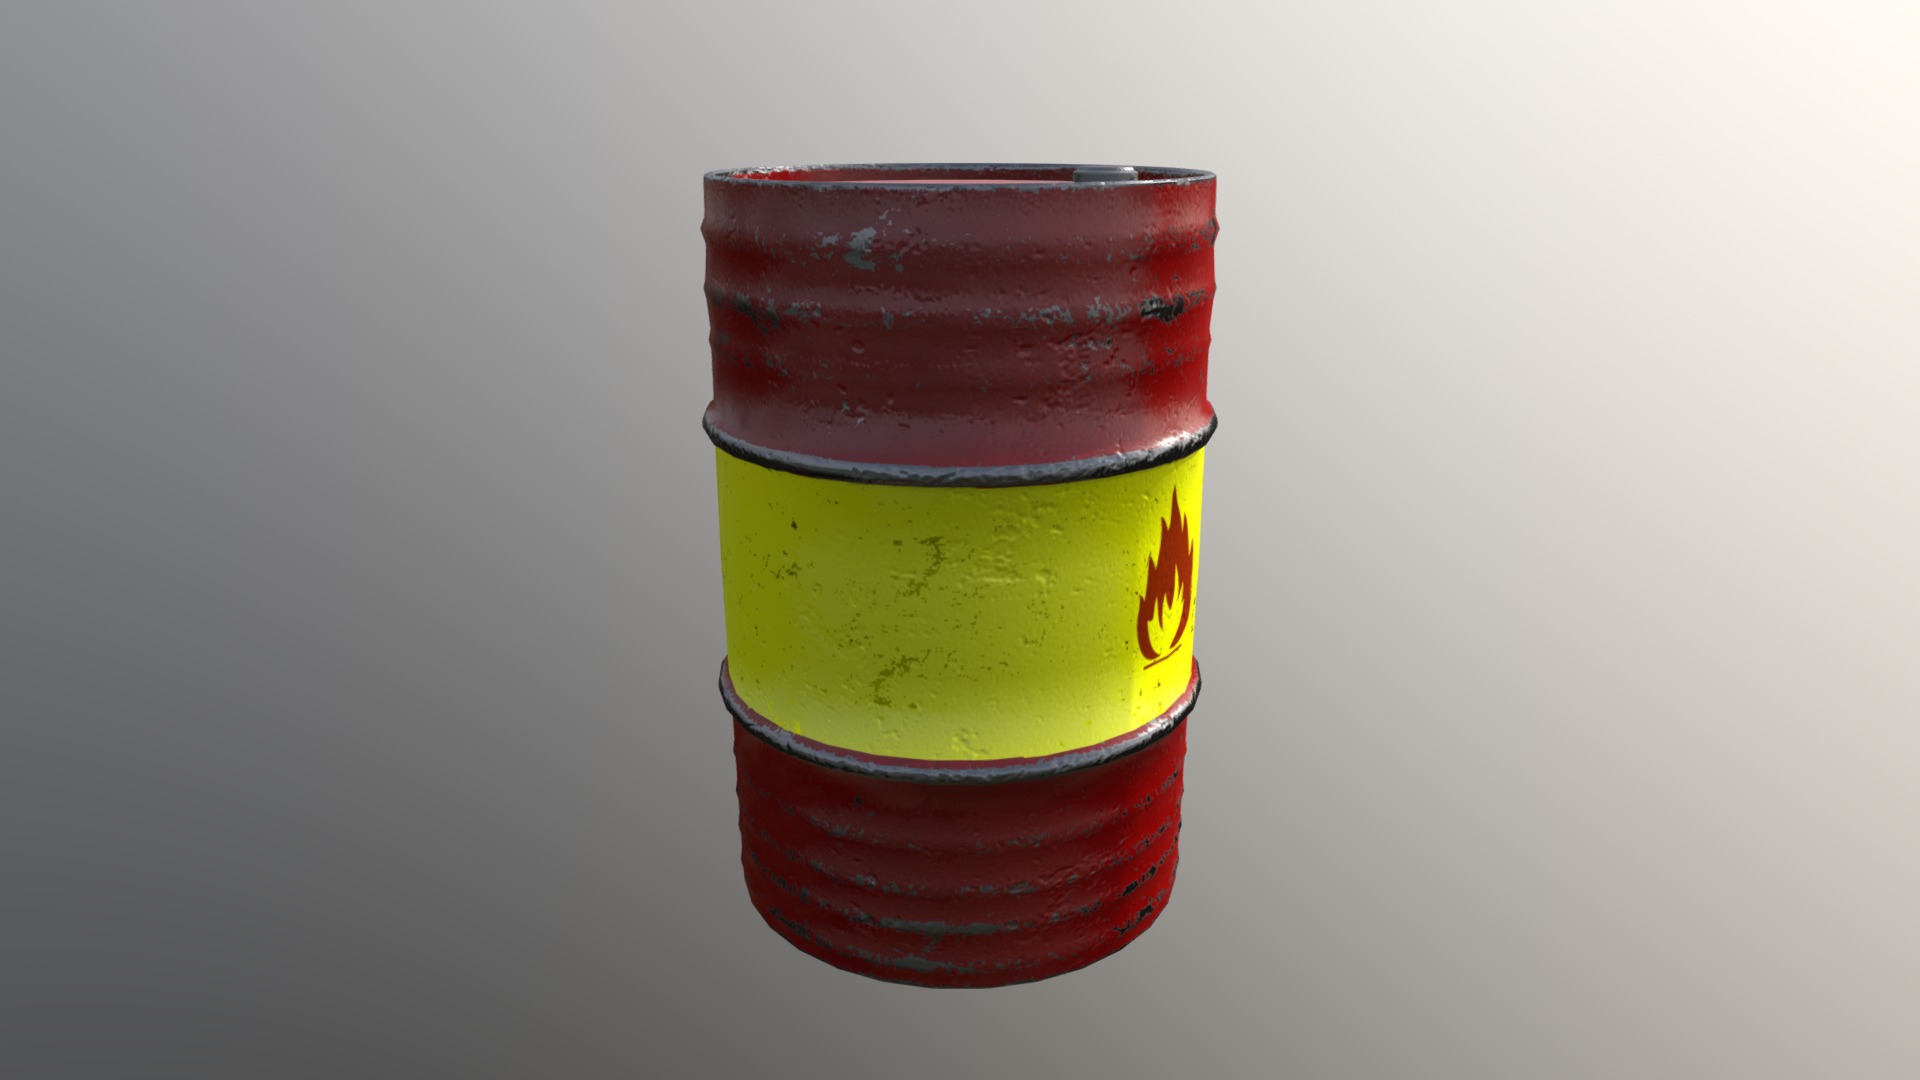 Barrel + 4 diffrent texture - 3D model by RMA1 [b756d57] - Sketchfab